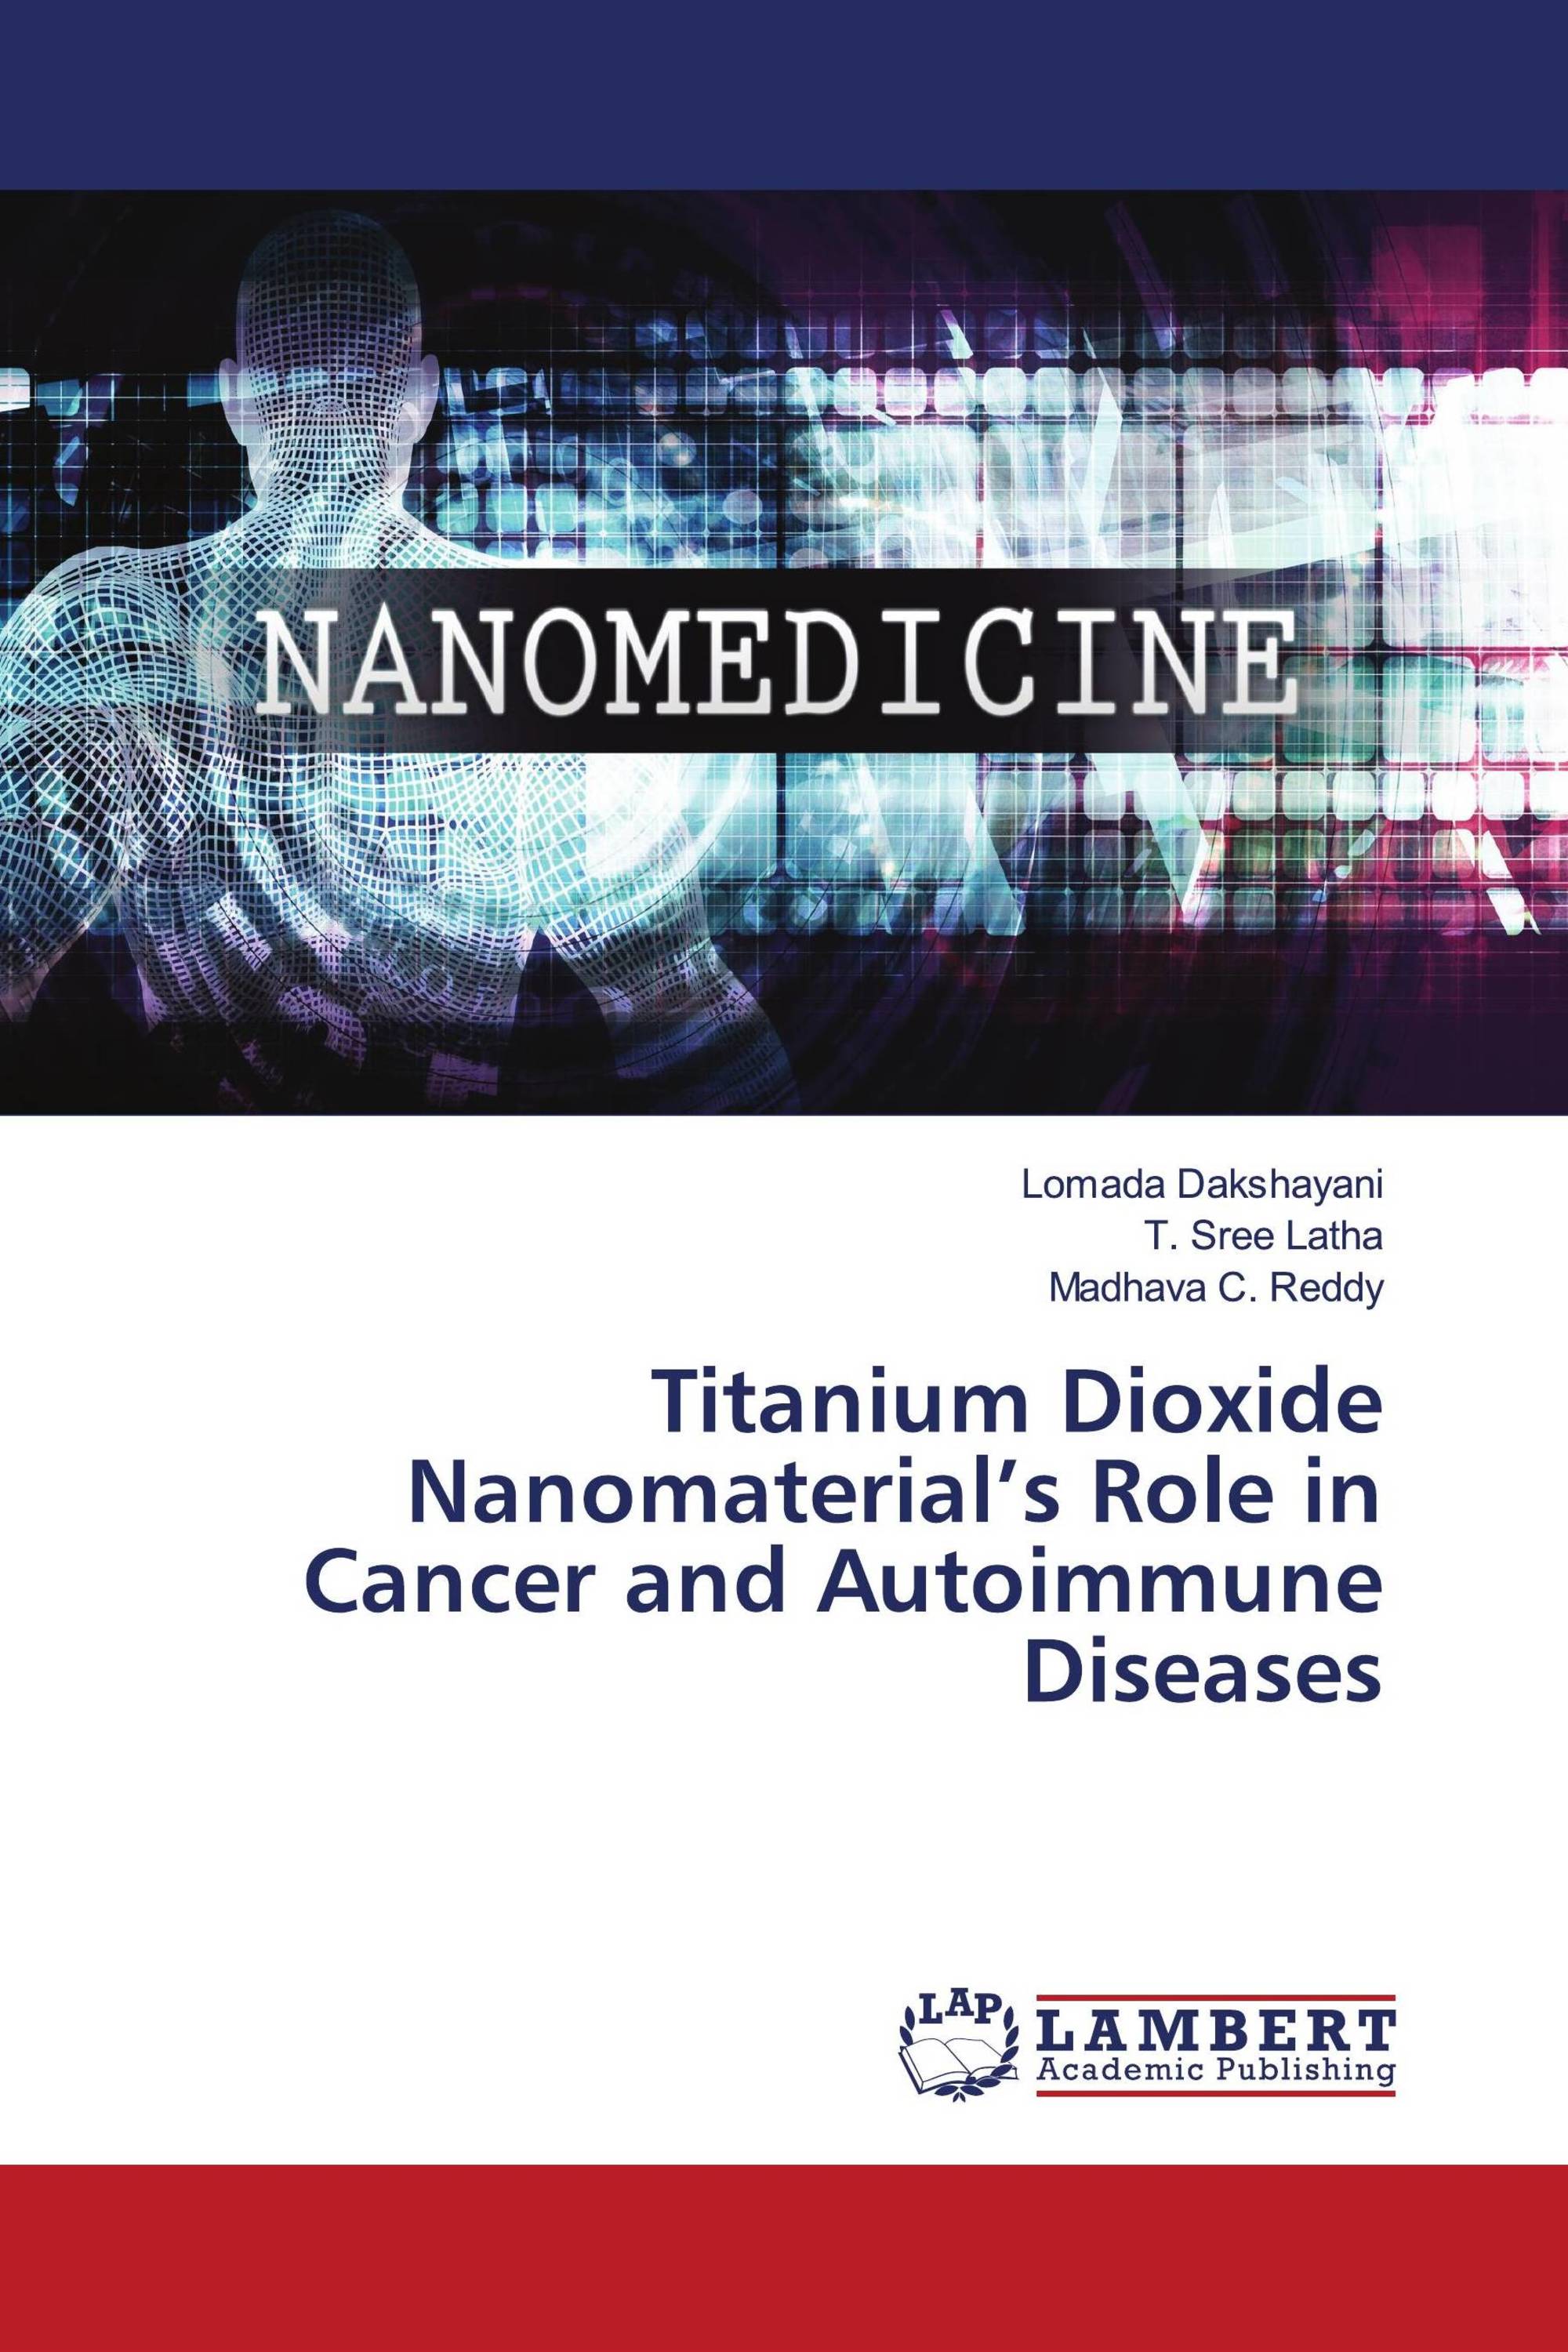 Titanium Dioxide Nanomaterial’s Role in Cancer and Autoimmune Diseases